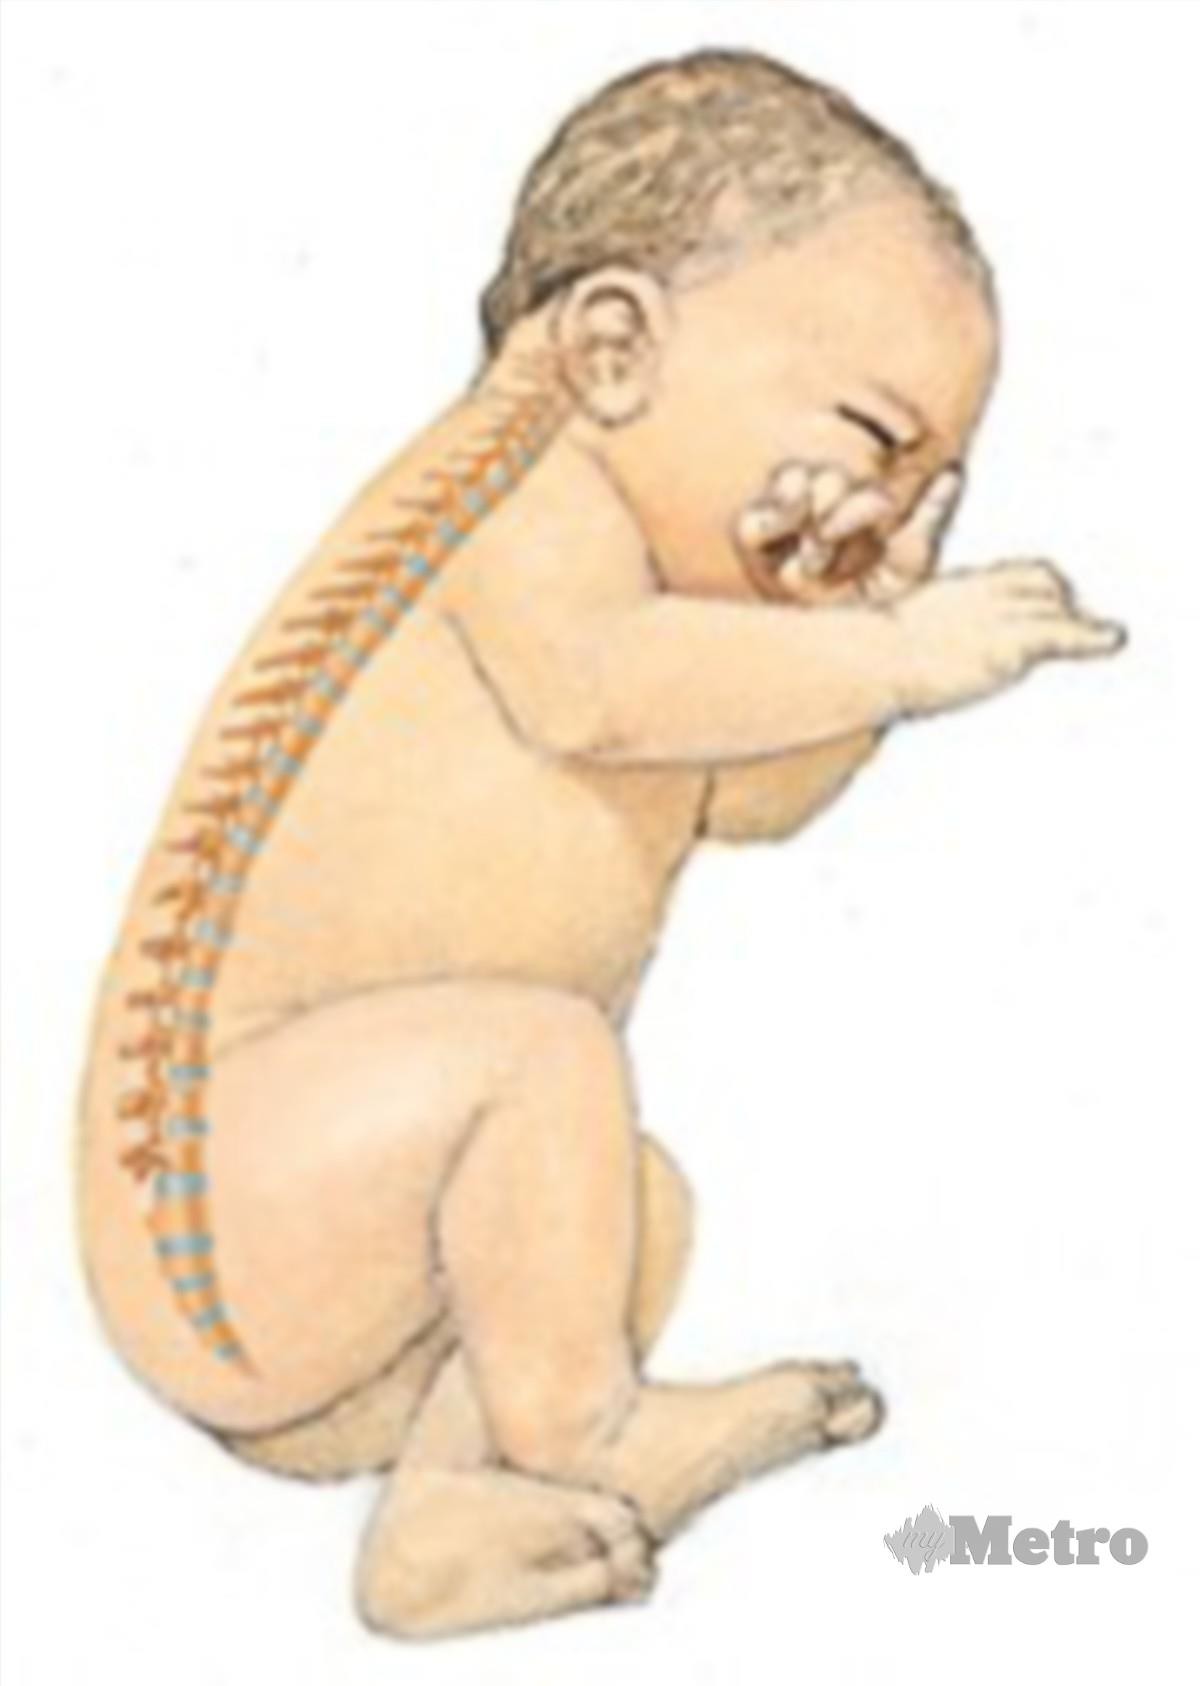 TULANG belakang bayi terbentuk lekuk seperti huruf ‘C’. 